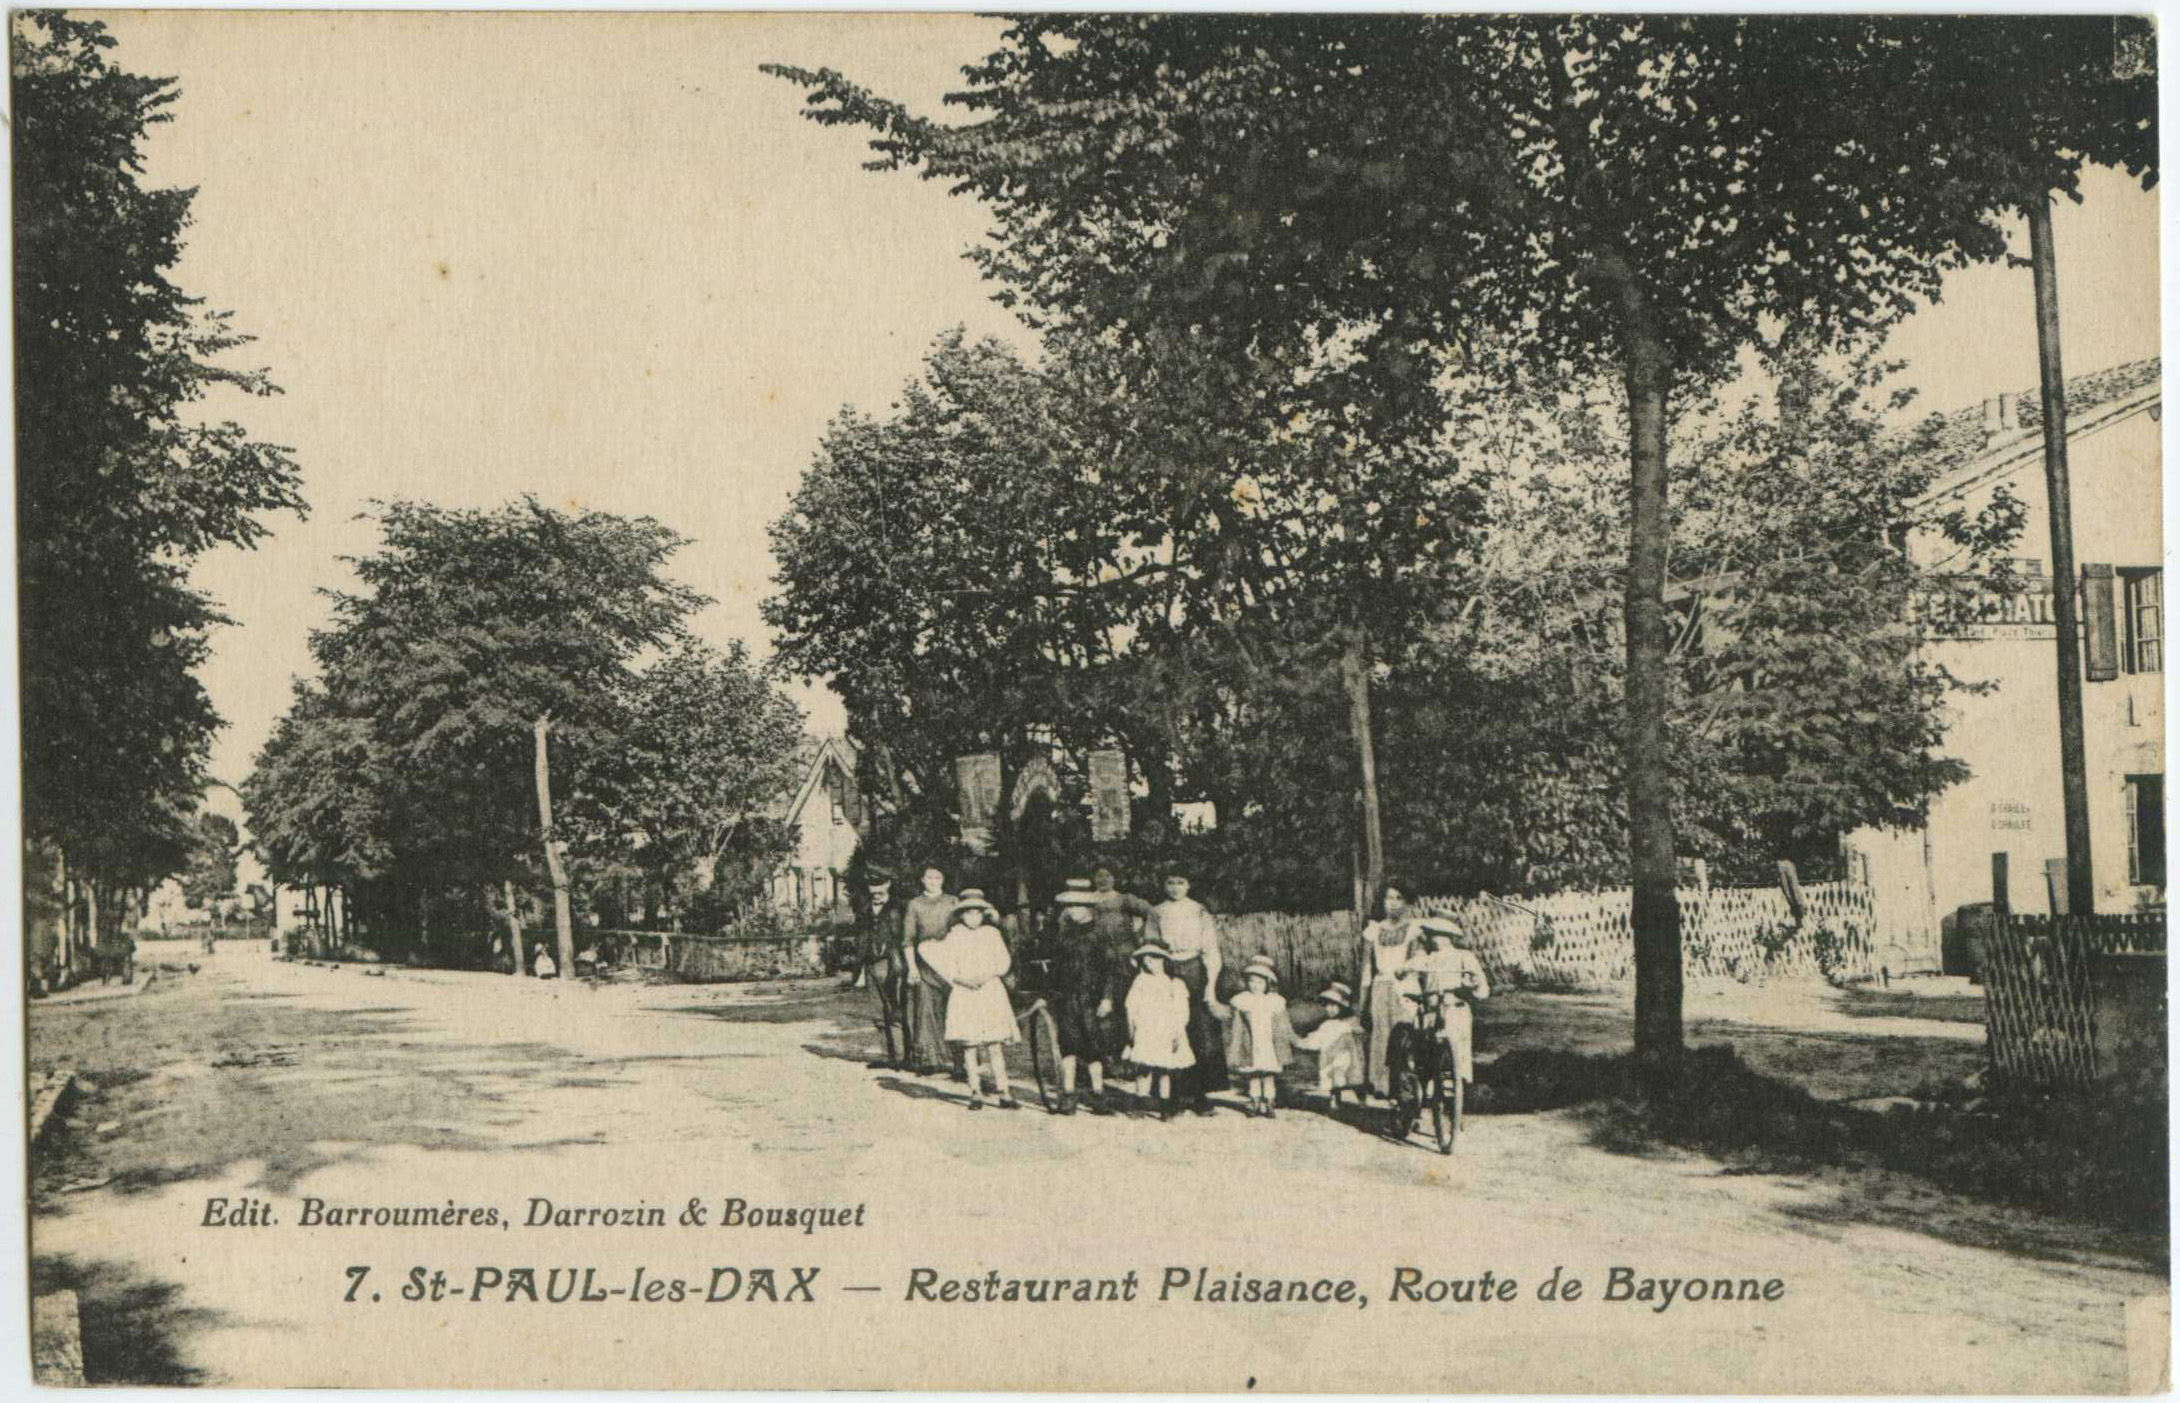 Saint-Paul-lès-Dax - Restaurant Plaisance, Route de Bayonne